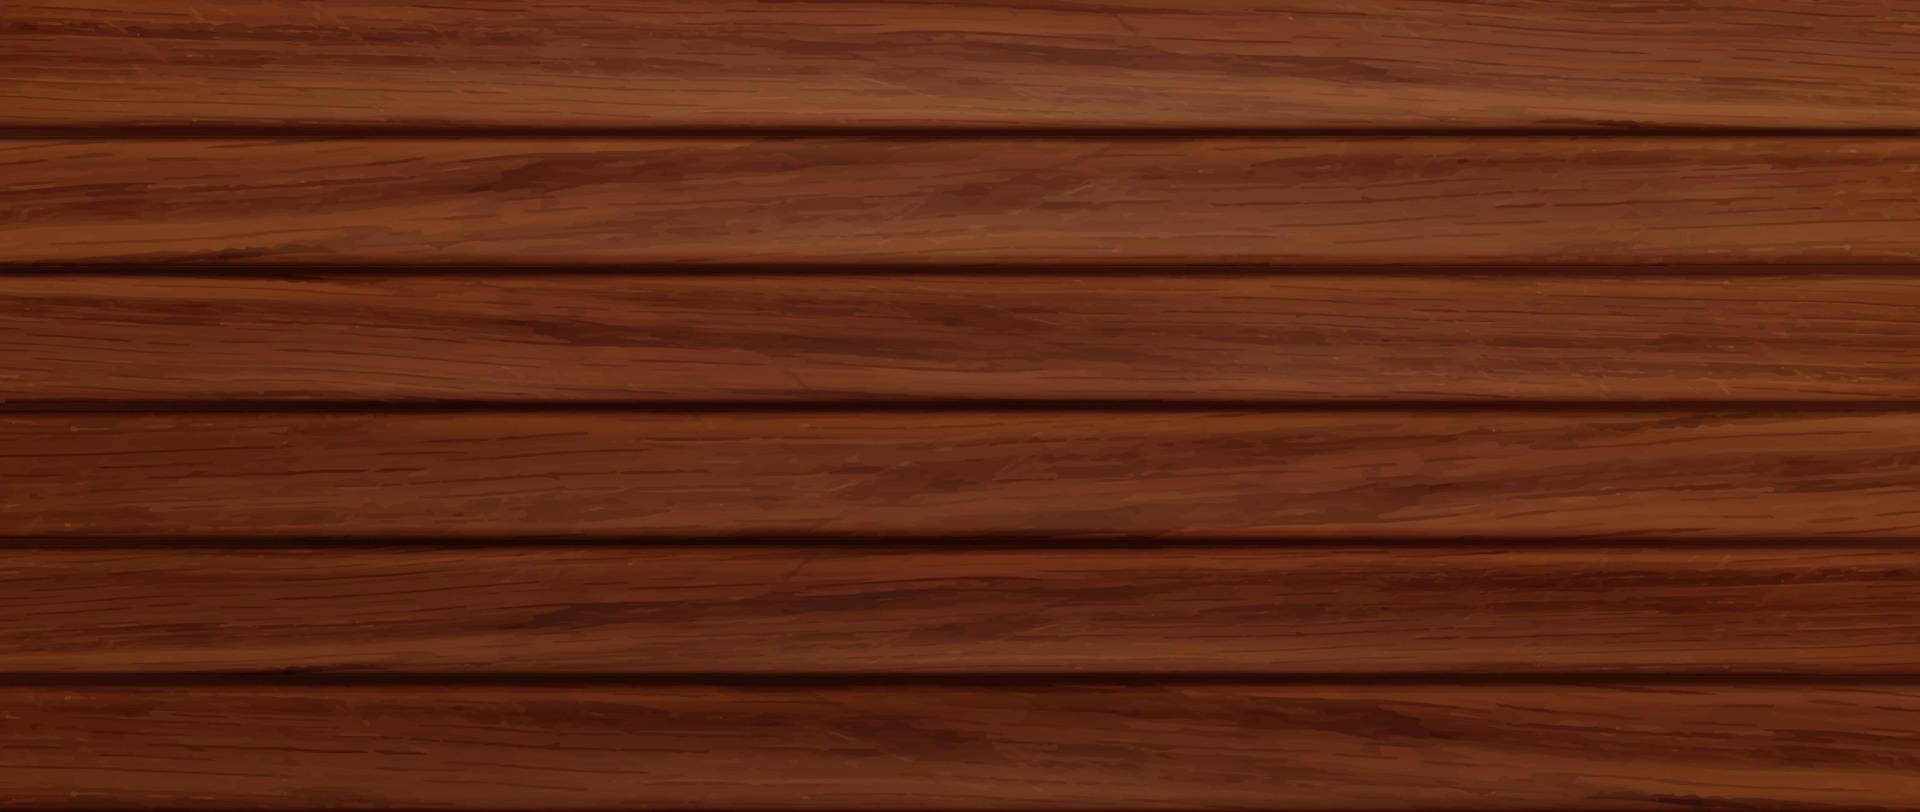 trä- bakgrund, textur av brun trä plankor vektor